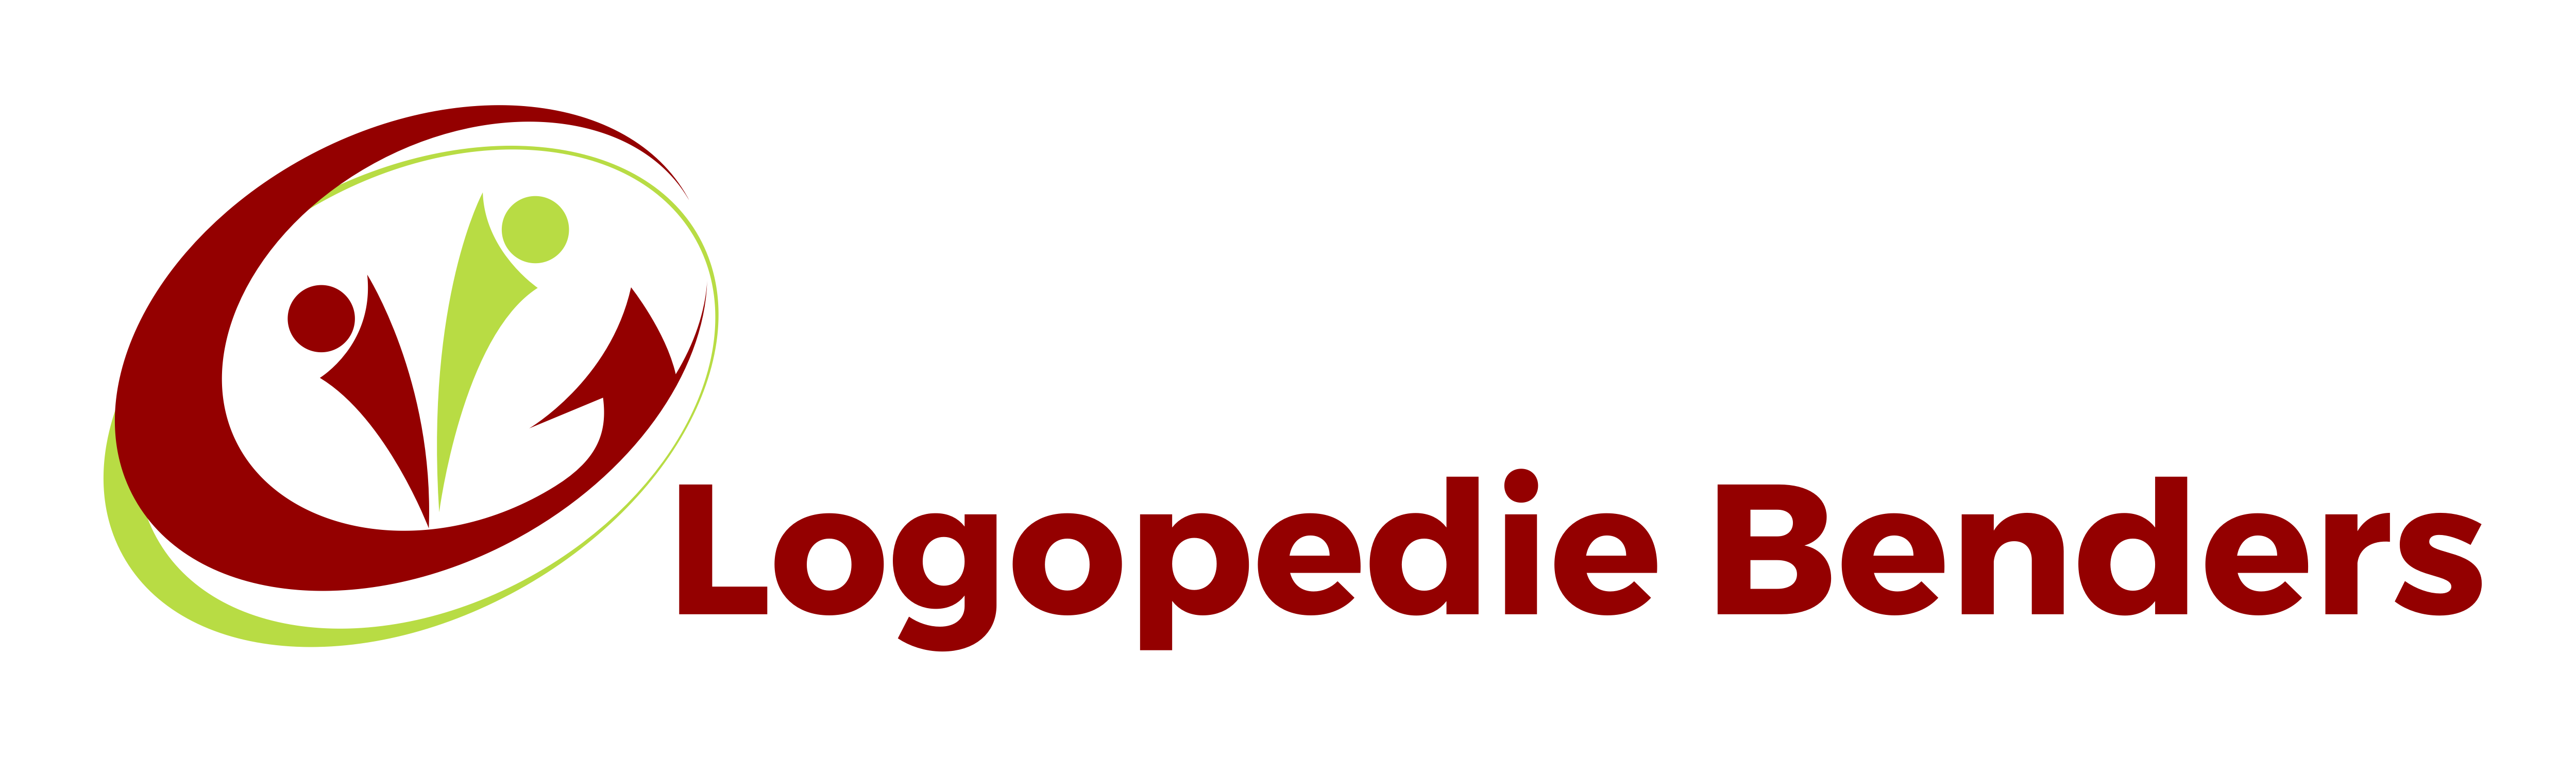 Logopedie-Benders